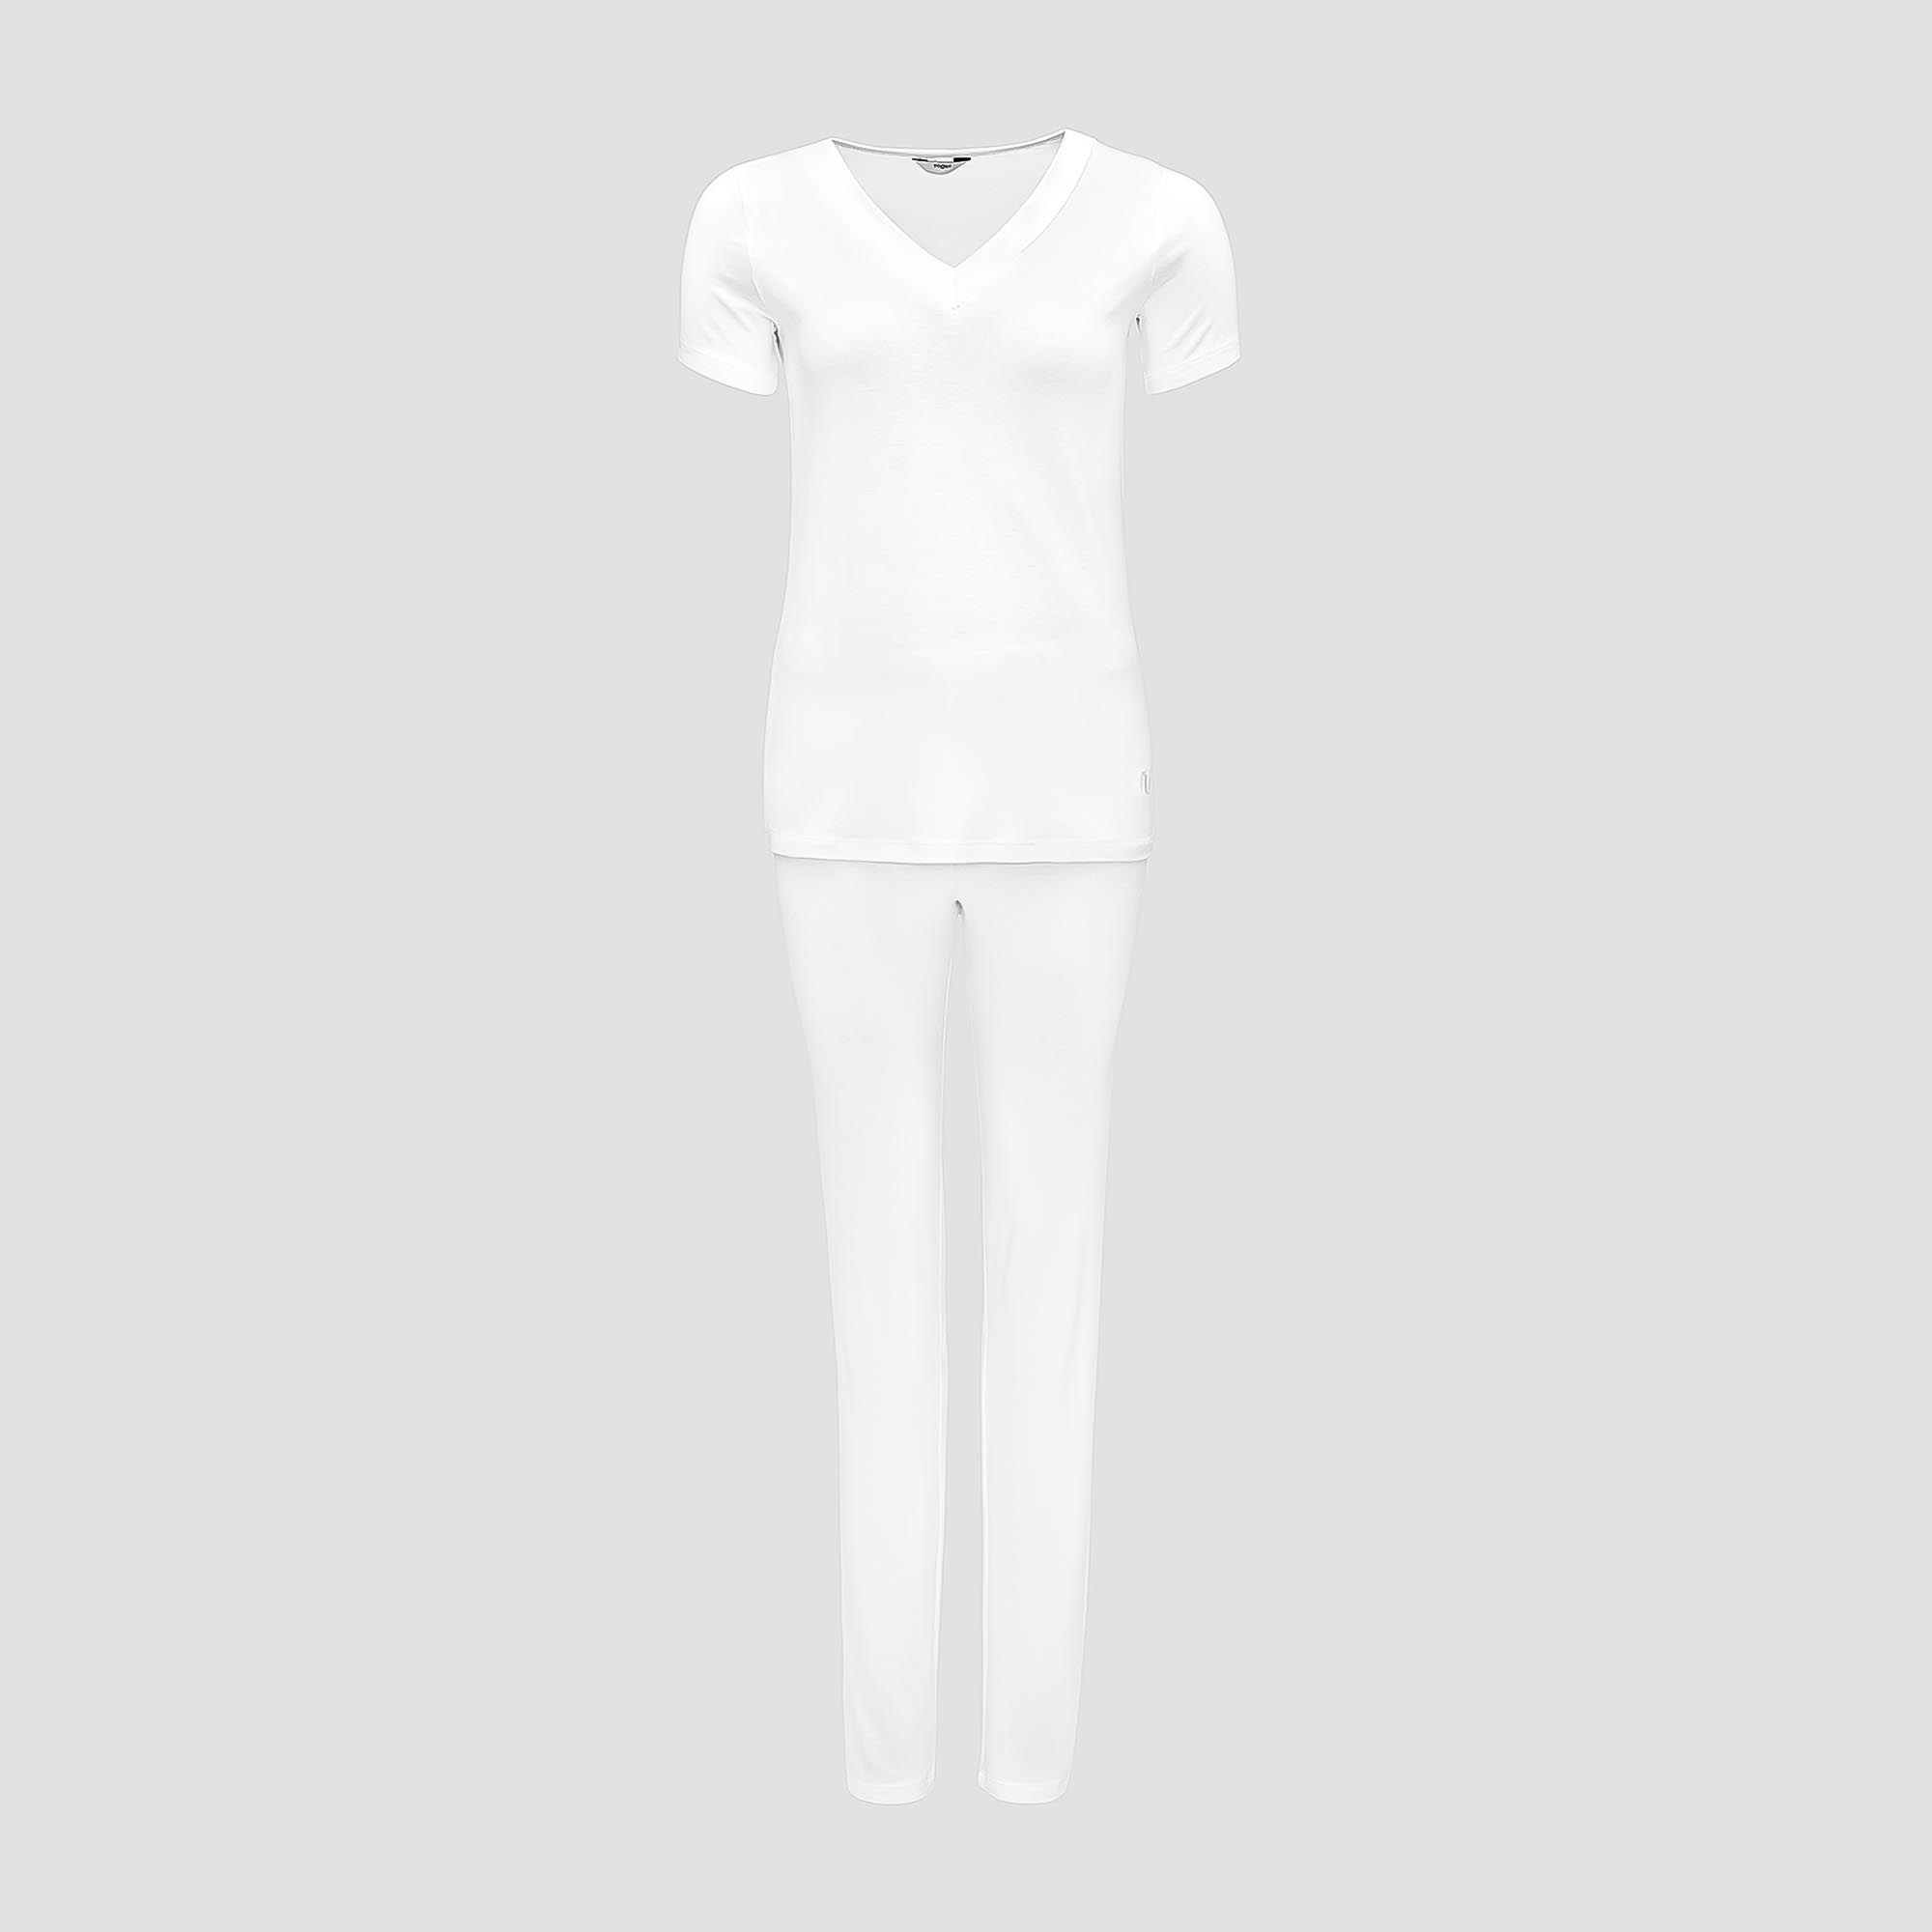 Пижама Togas Ингелла белая женская XXL(52) 2 предмета жен пижама с шортами инь янь белый р 52